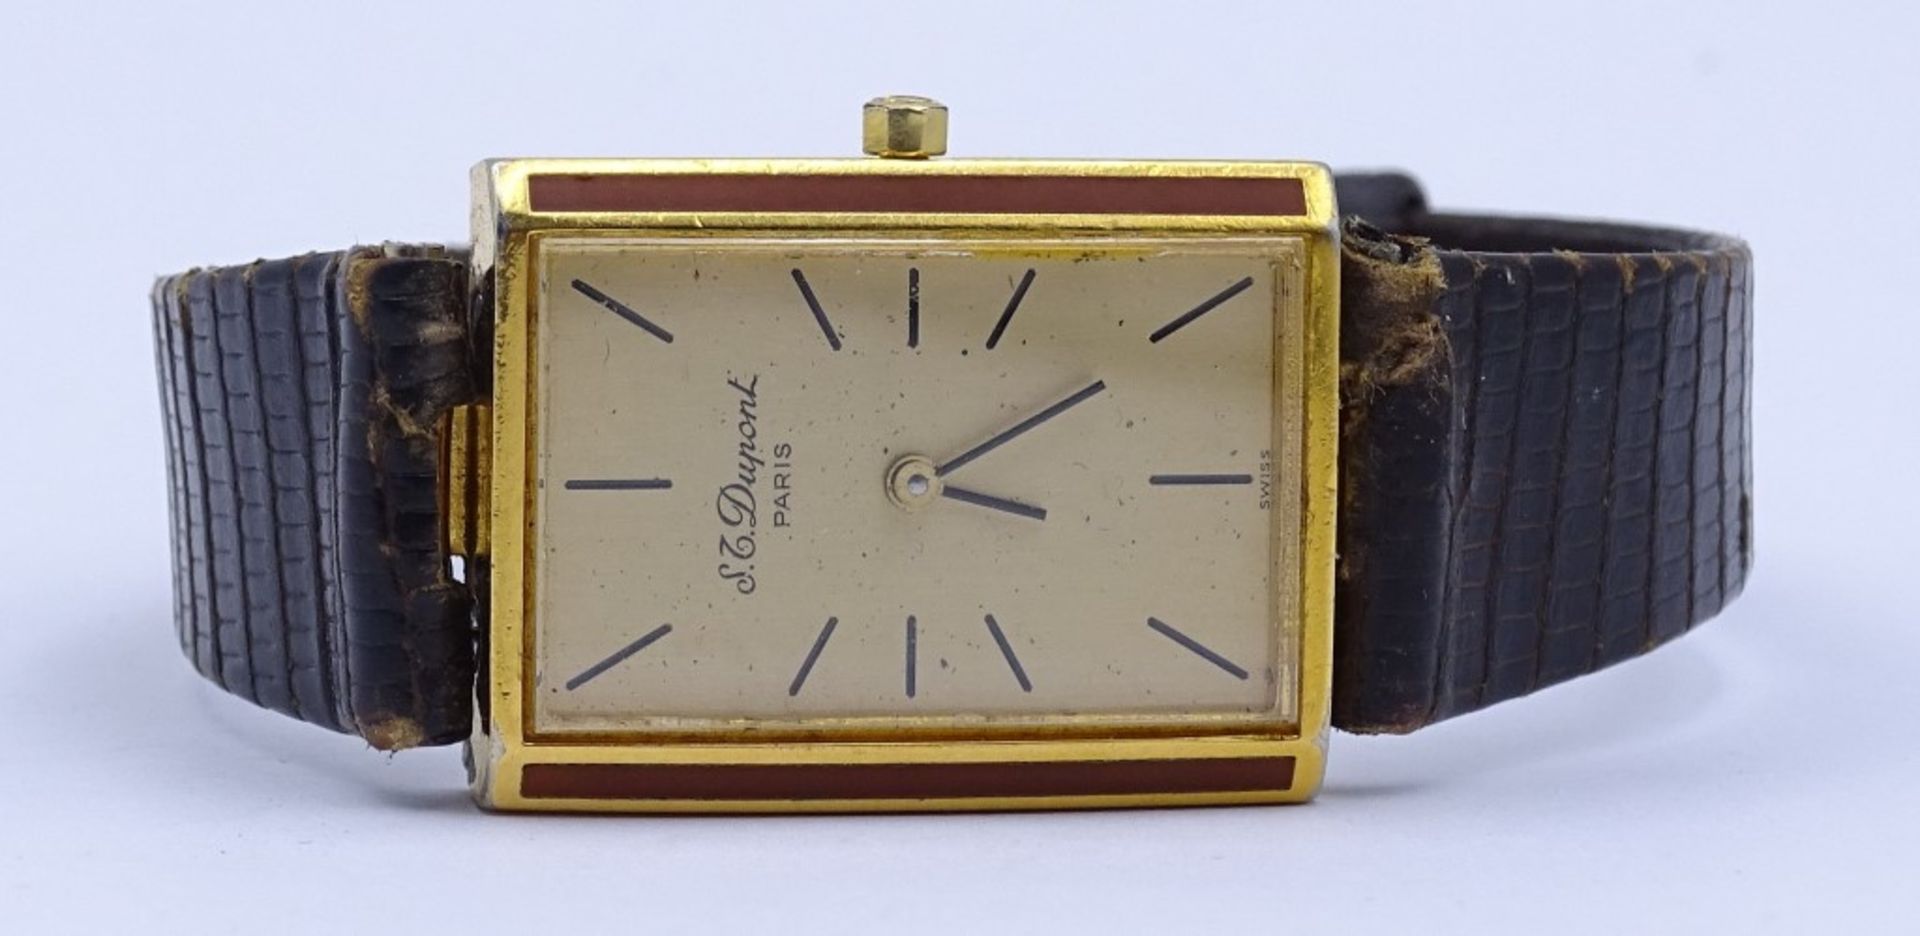 Armbanduhr "St.Dupont",verso China Lack,Quartz,Funktion nicht geprüft,Alters-u. Gebrauchsspuren - Bild 5 aus 7